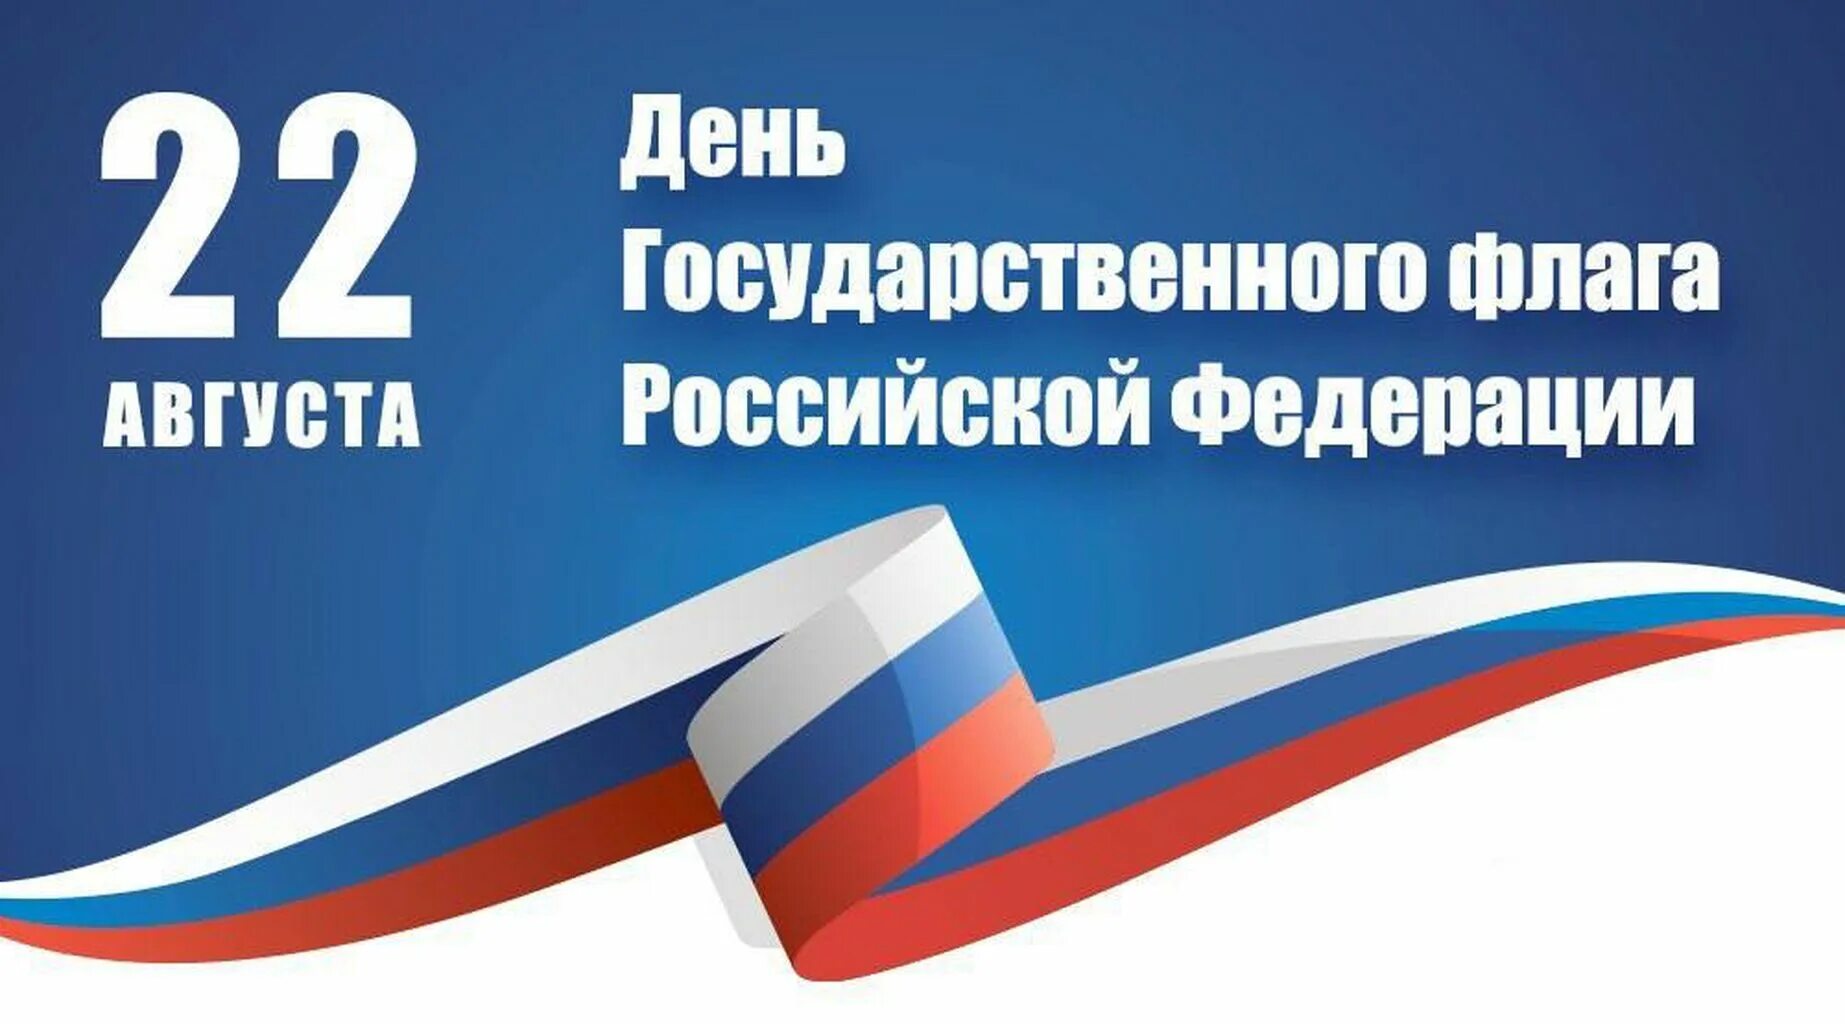 22 августа отмечается день флага. День флага. День государственного флага Российской Федерации. 22 Августа день государственного флага. Праздник день российского флага.